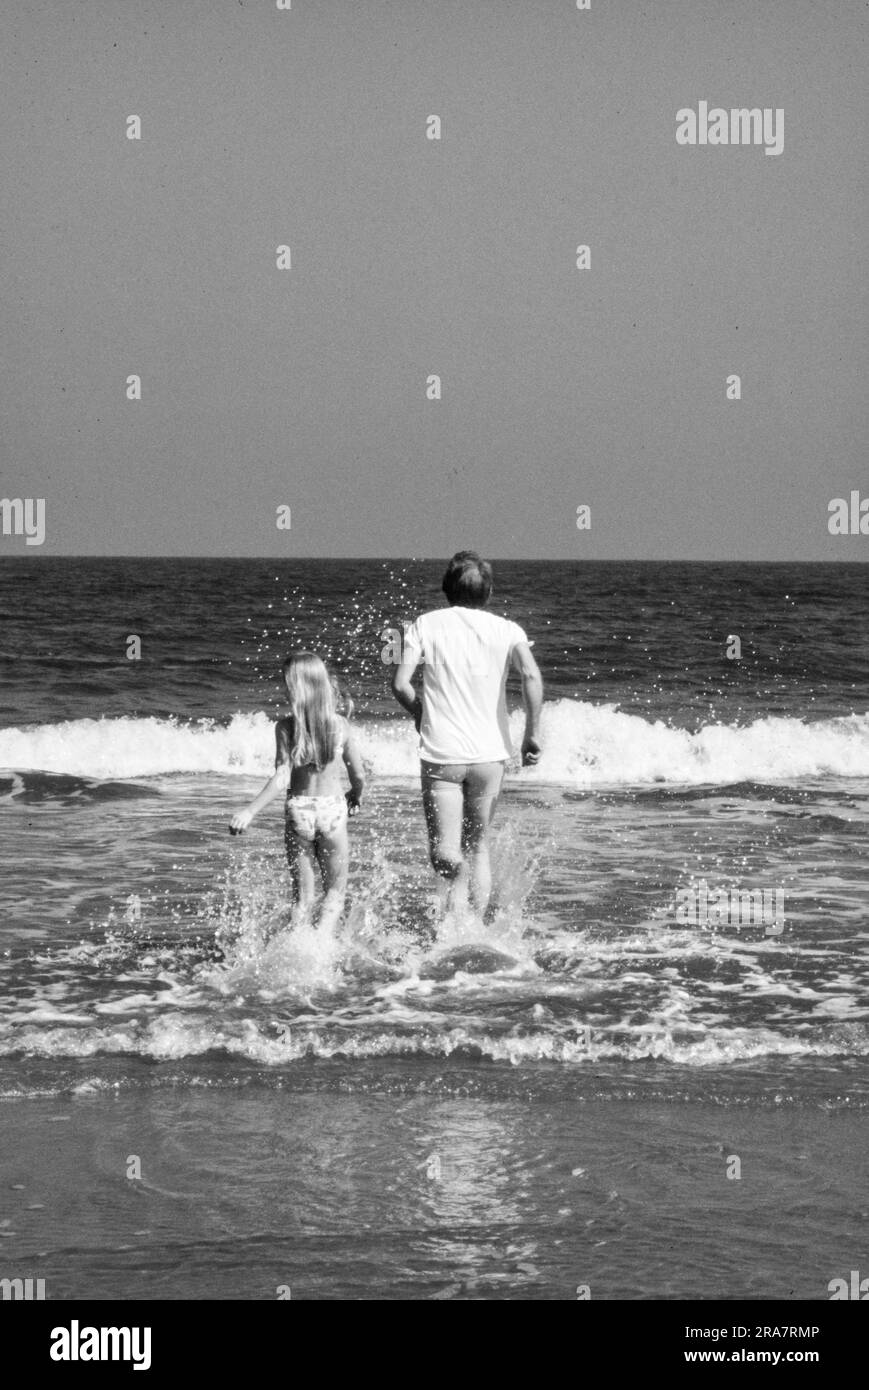 Präsident Jimmy Carter und die Tochter Amy Carter sind während ihres Urlaubs auf Sea Island, Georgia, im Surfen. Foto von Bernard Gotfryd Stockfoto